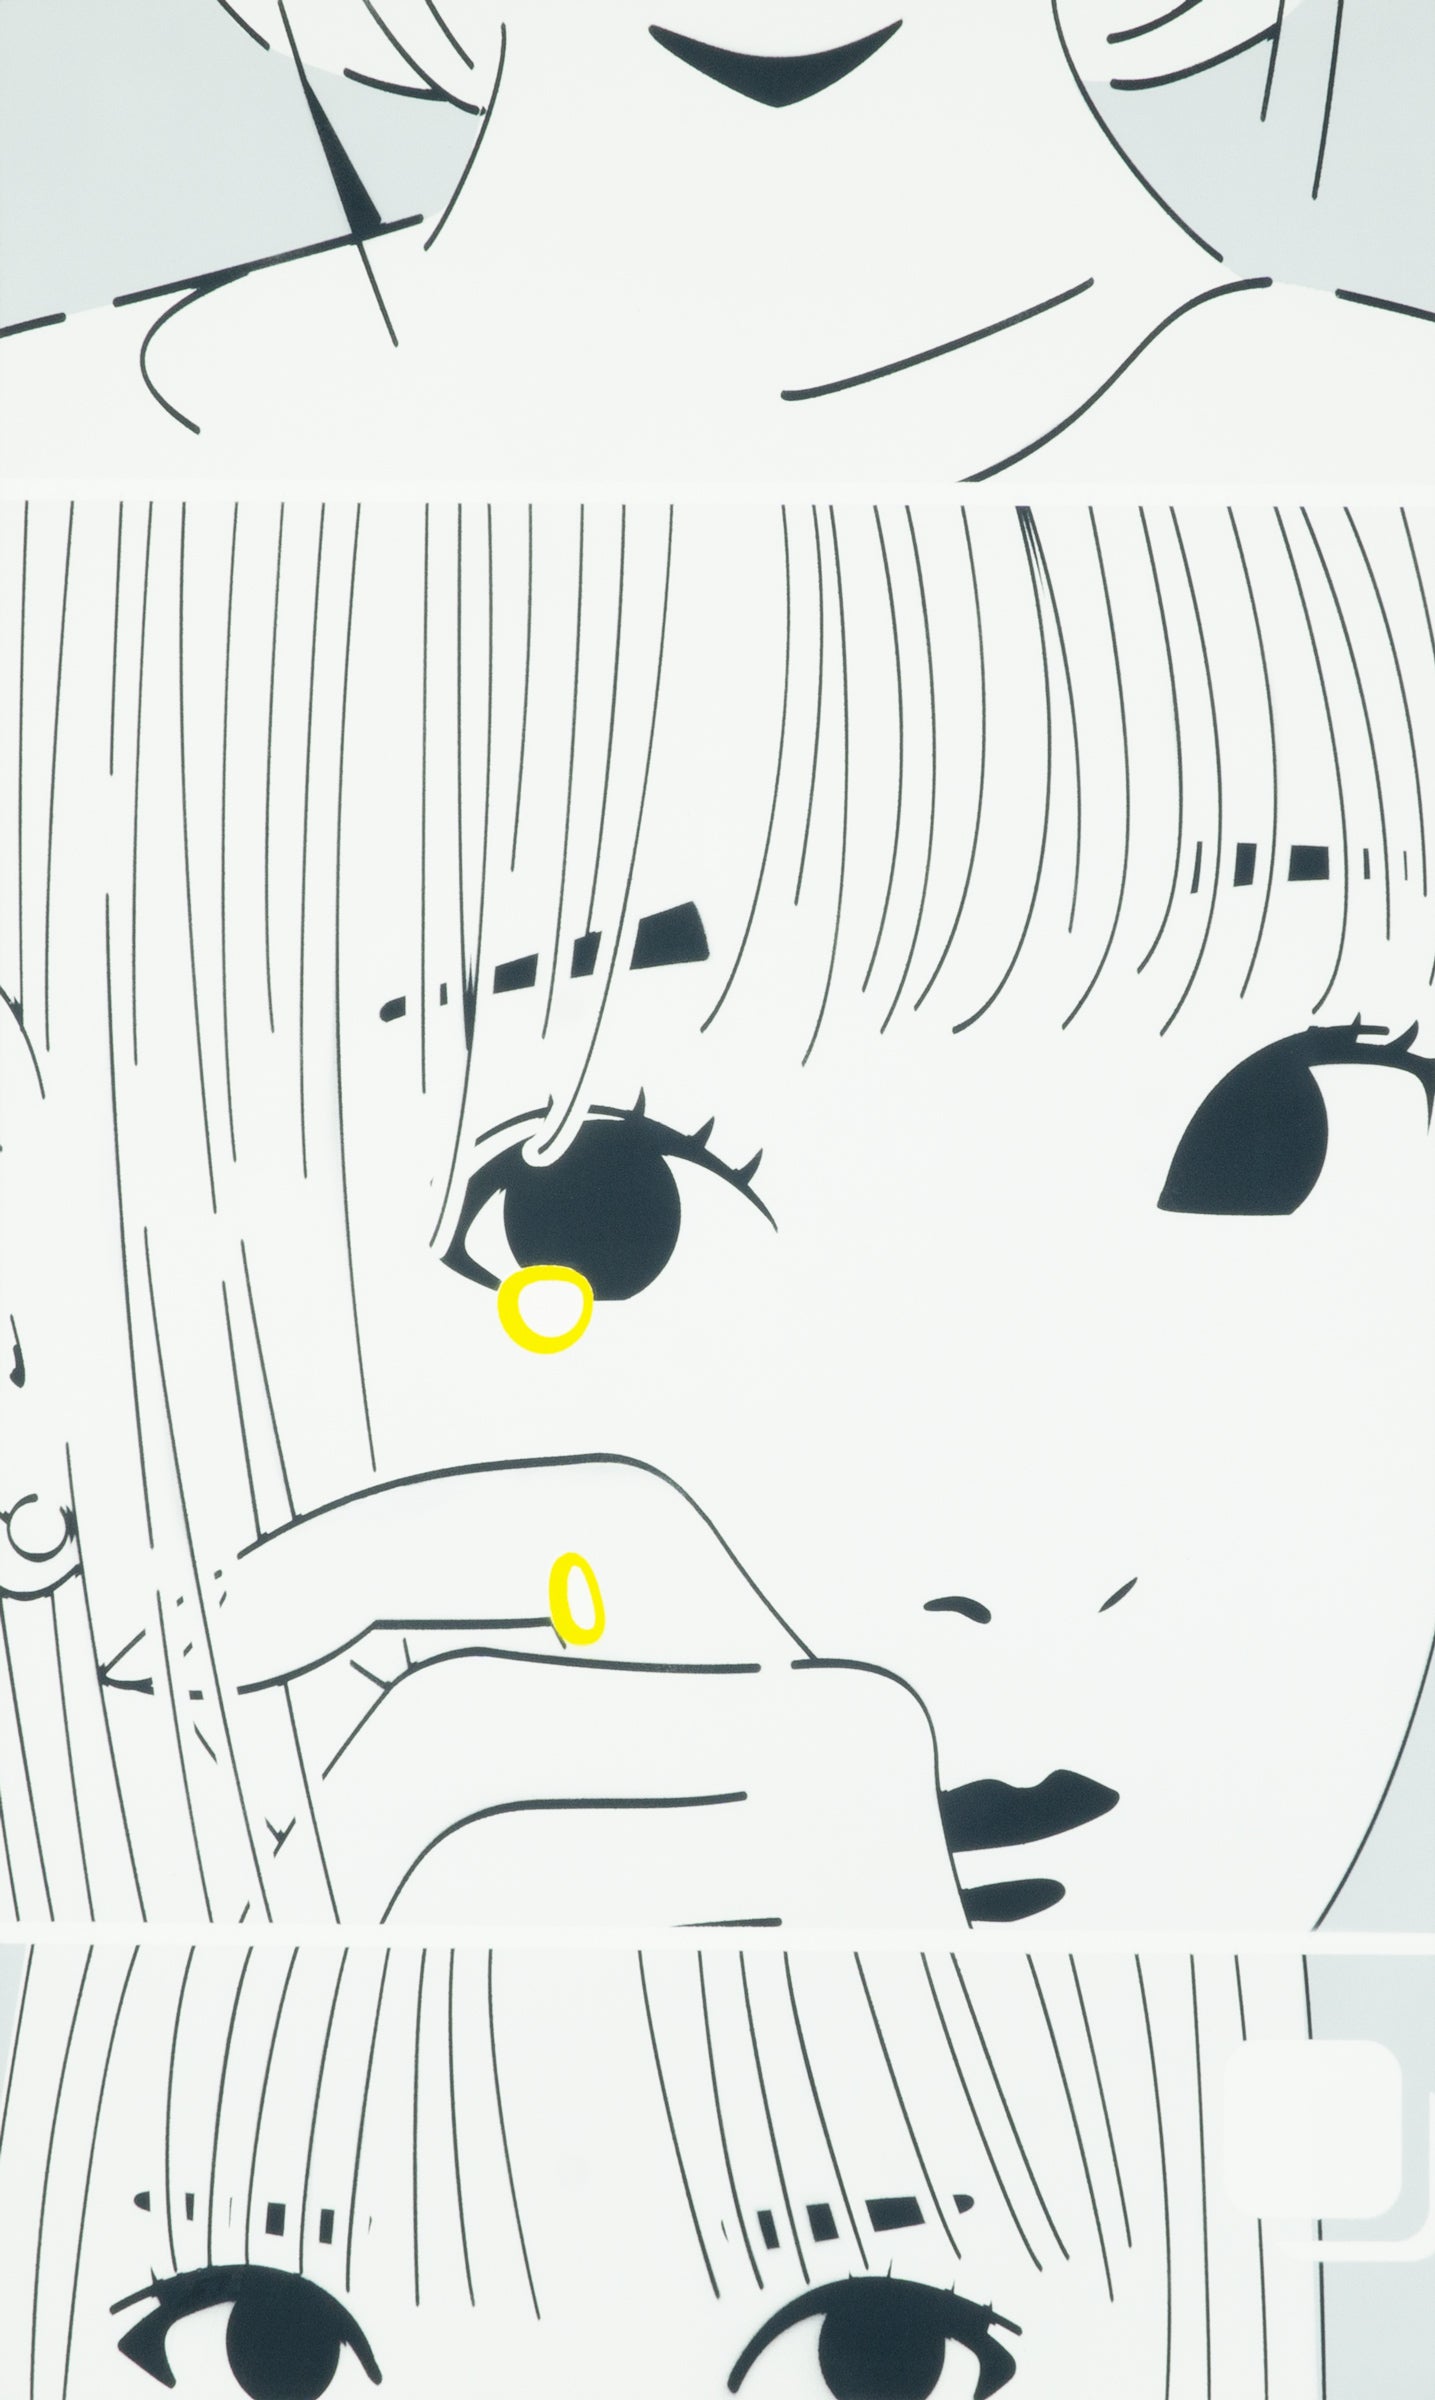 Crying Girl ‘21 *1
Crying Girl ‘21 *2
Crying Girl ‘21 *3 by Masato Yamaguchi / 山口真人 Painting,SELFY,2021,TOKYO